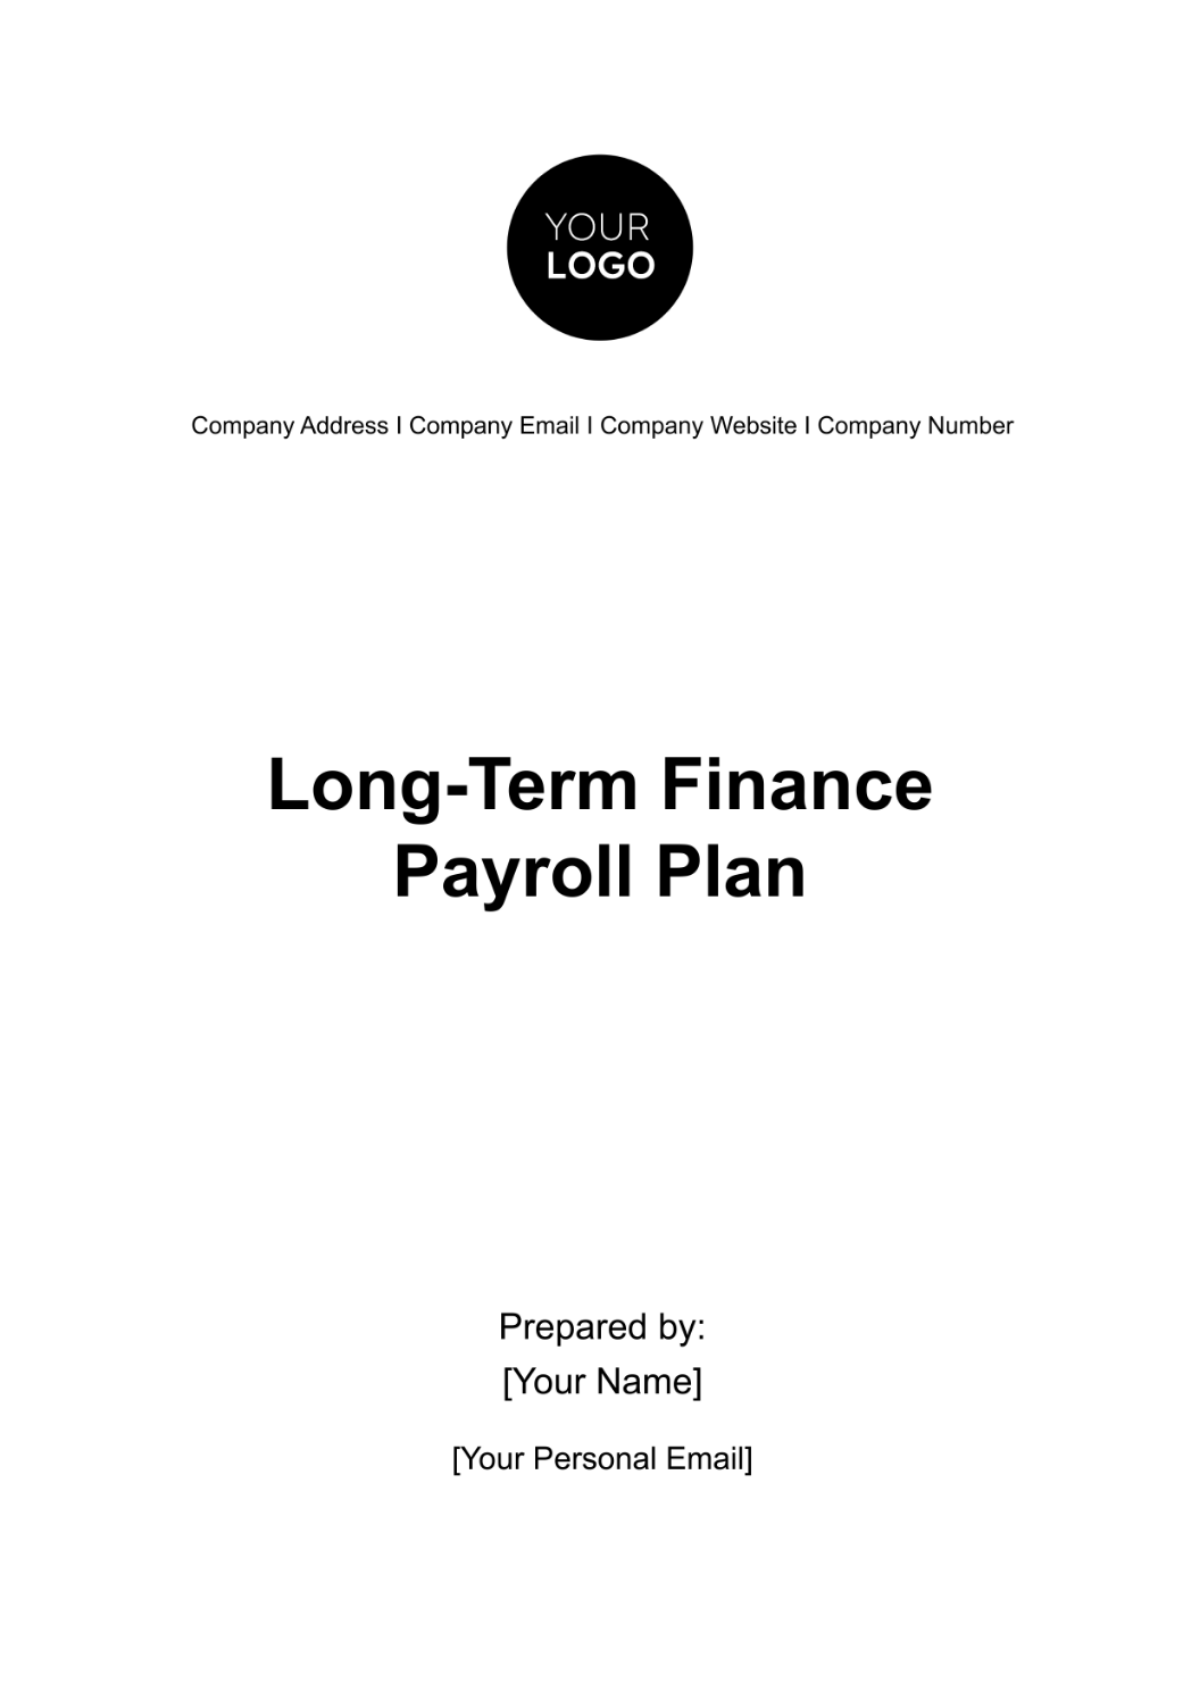 Long-Term Finance Payroll Plan Template